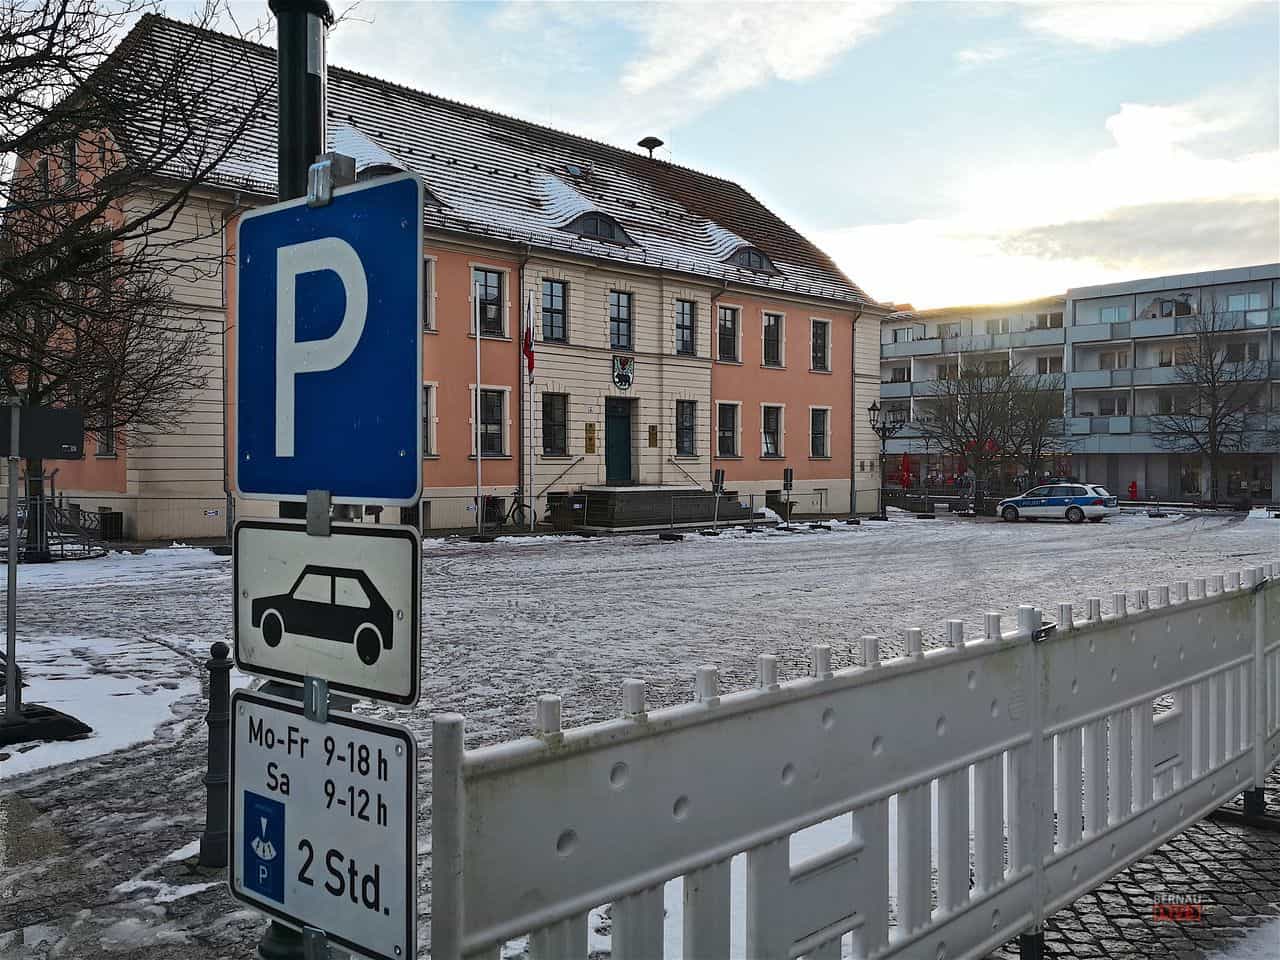 Ab heute darf auf dem Marktplatz in Bernau geparkt werden